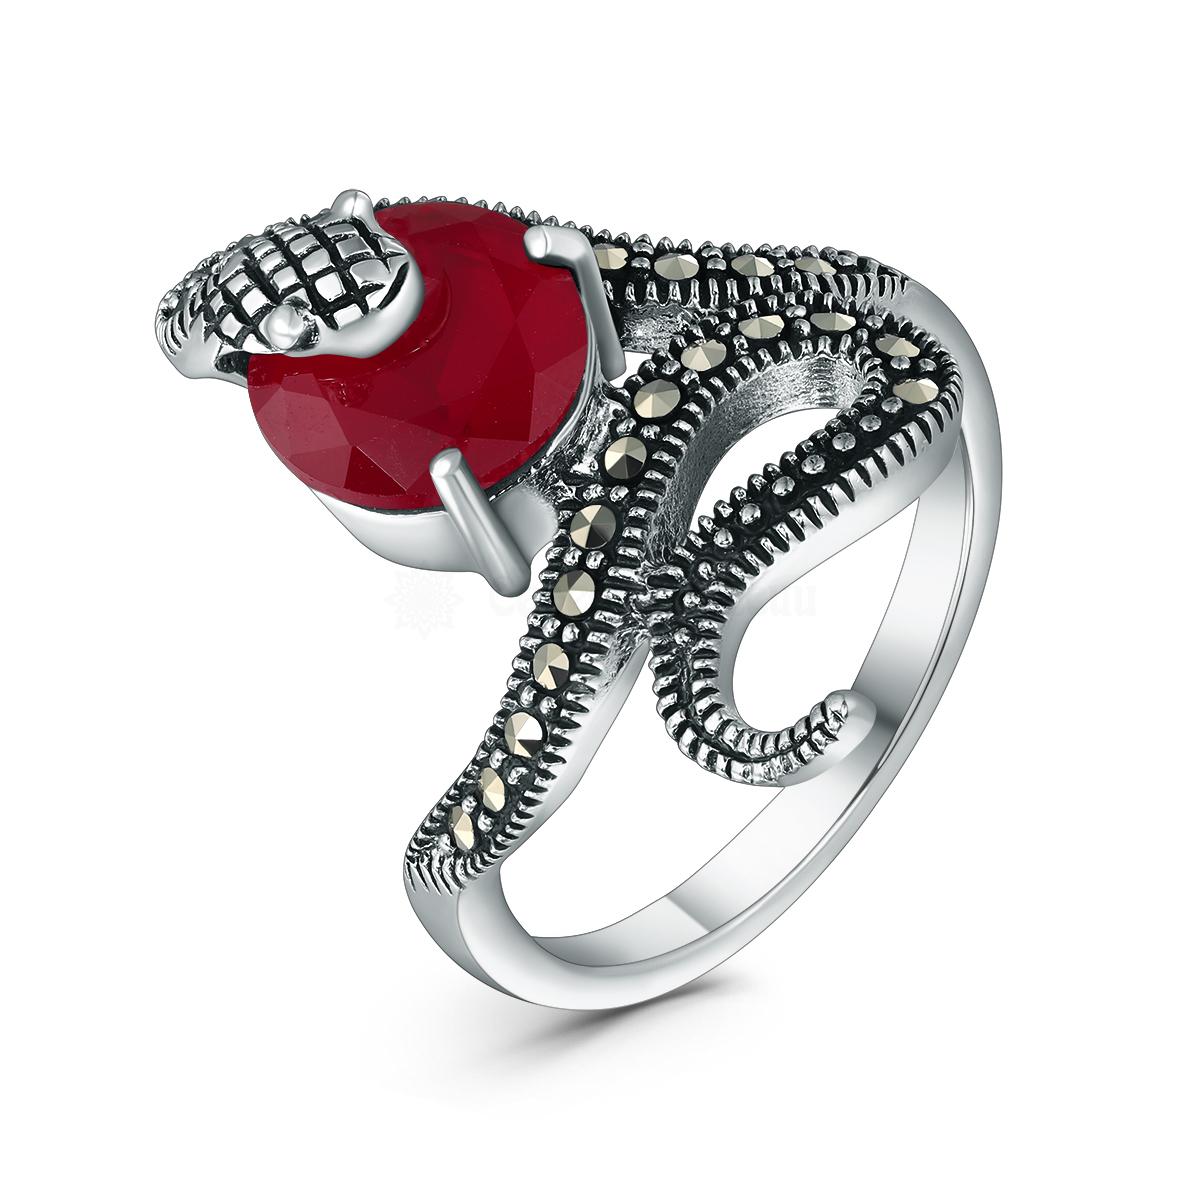 Кольцо змея из чернёного серебра с плавленым кварцем цвета рубин и марказитами GAR3130р